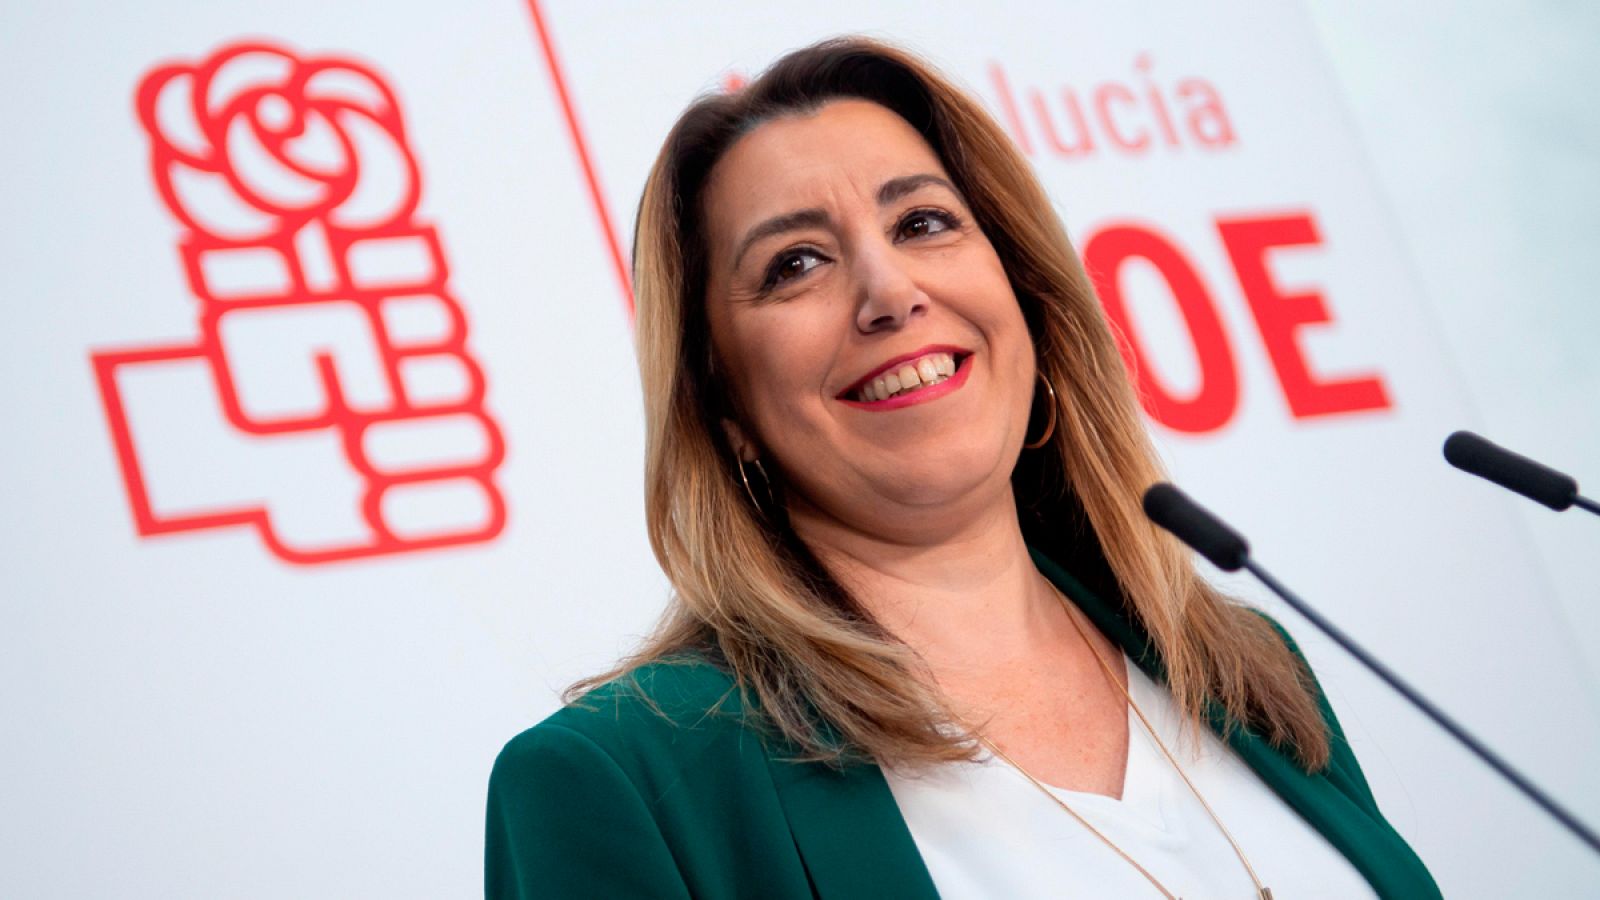 Vídeo: Susana Díaz no se va y liderará la oposición en Andalucía - RTVE.es